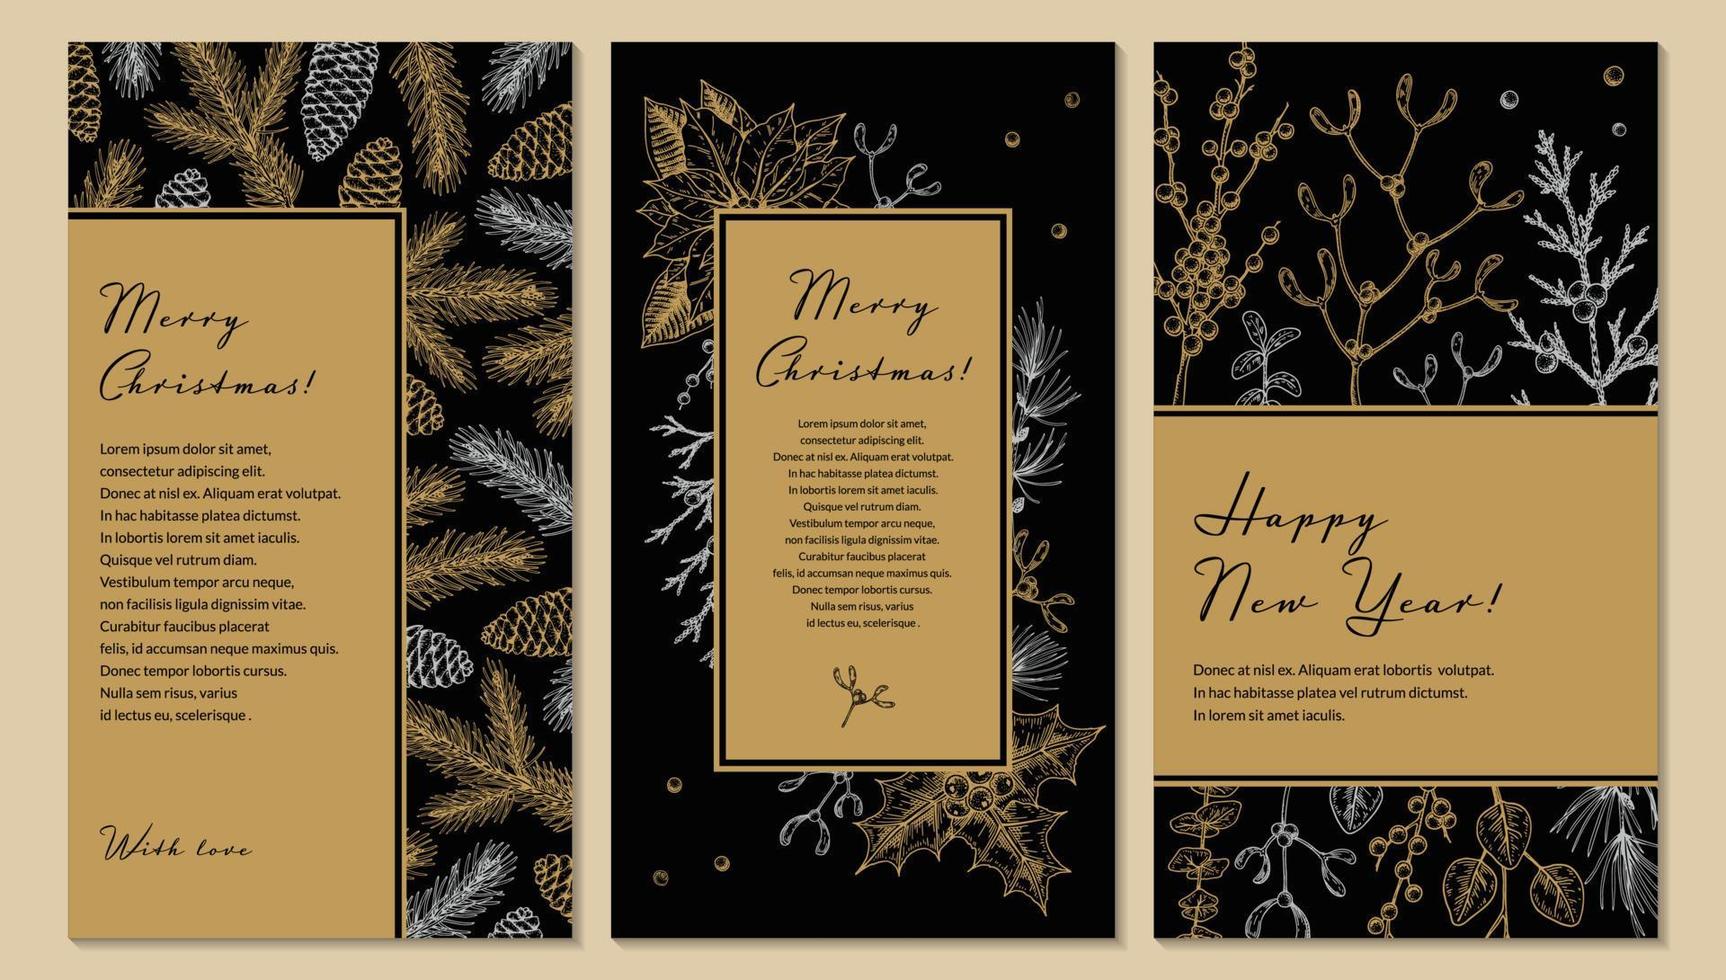 impostato di allegro Natale e contento nuovo anno verticale saluto carte con mano disegnato d'oro botanica elementi. vettore illustrazione nel schizzo stile. festivo sfondi. sociale media storie modelli